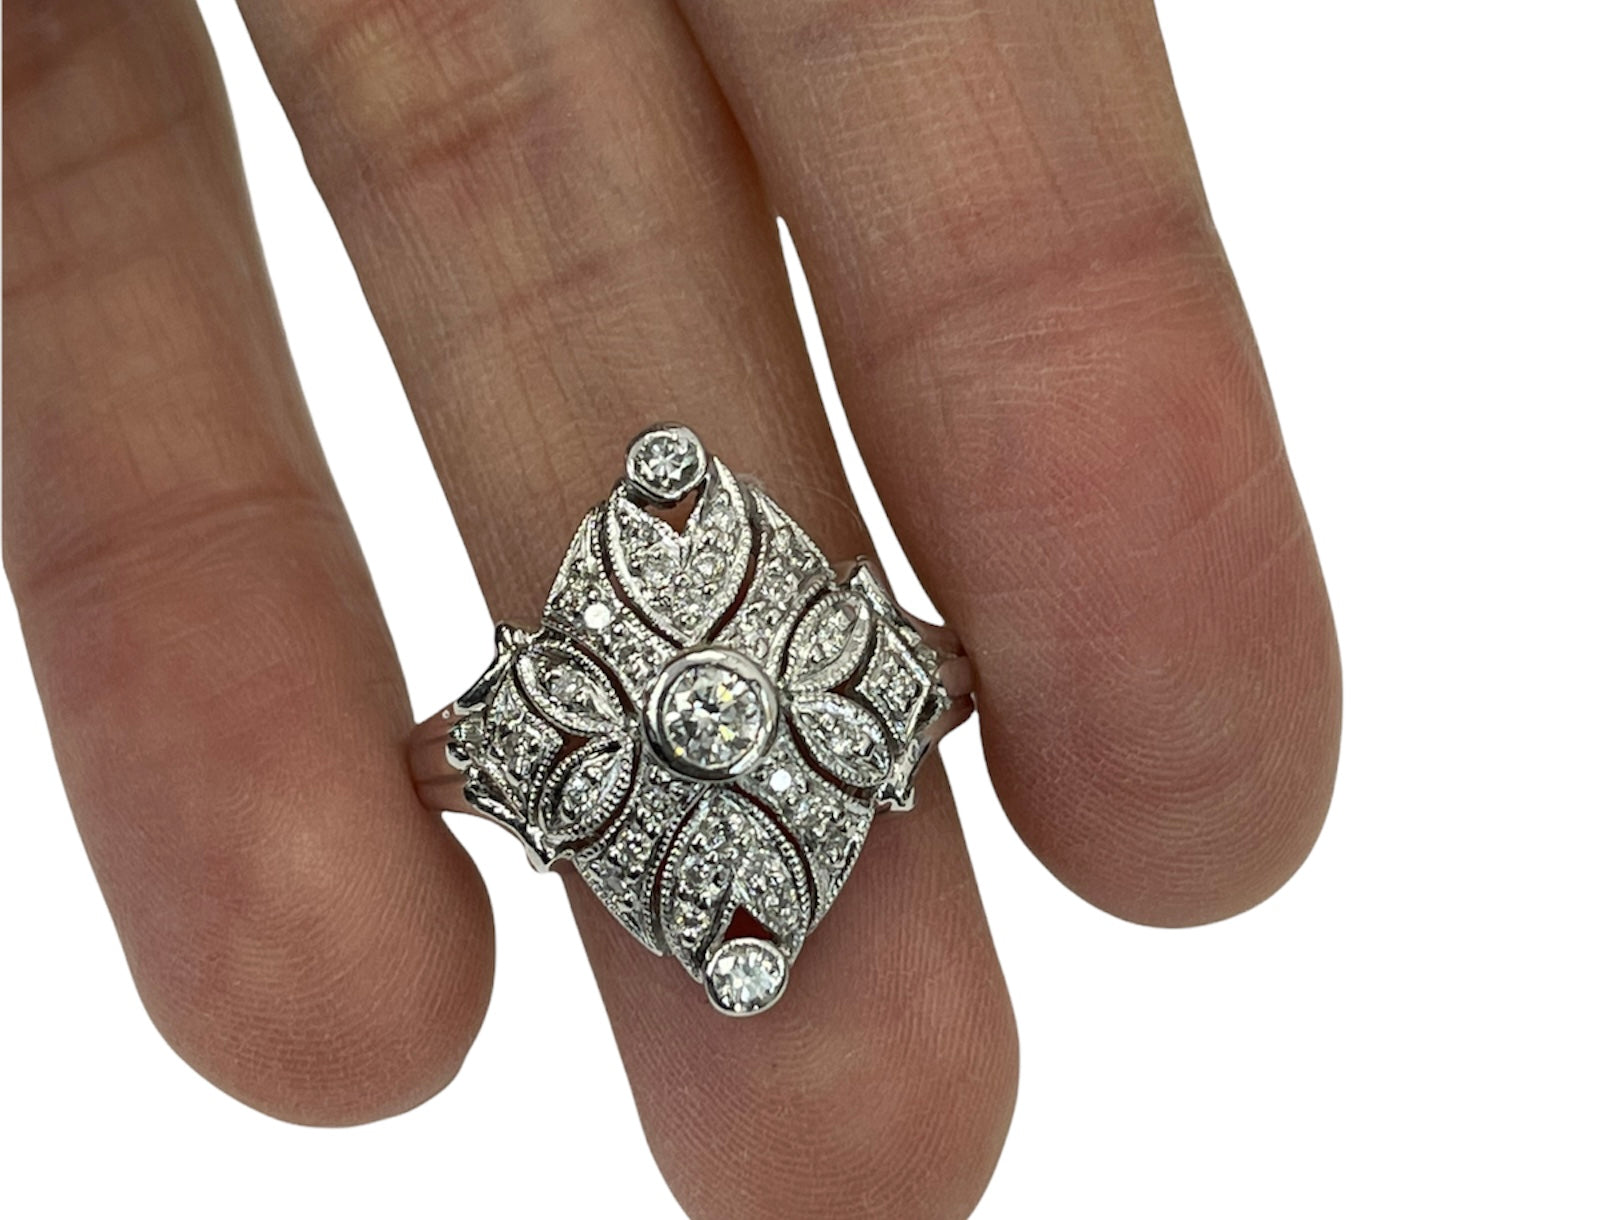 Art Deco Round Brilliants Diamond Ring Platinum